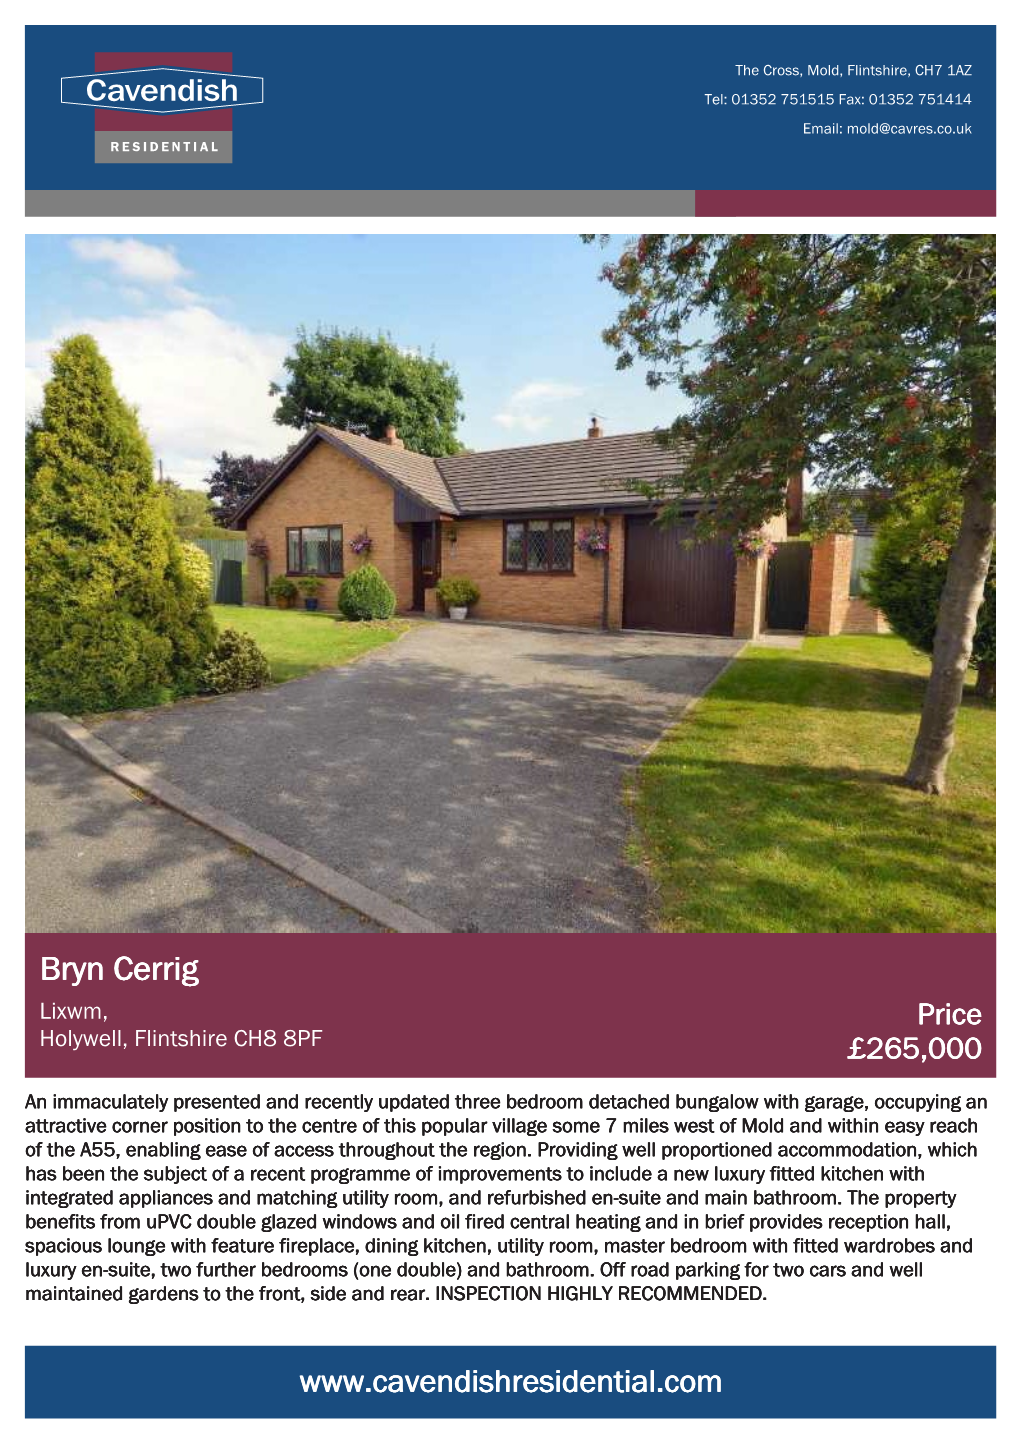 Bryn Cerrig Lixwm, Price Holywell, Flintshire CH8 8PF £265,000